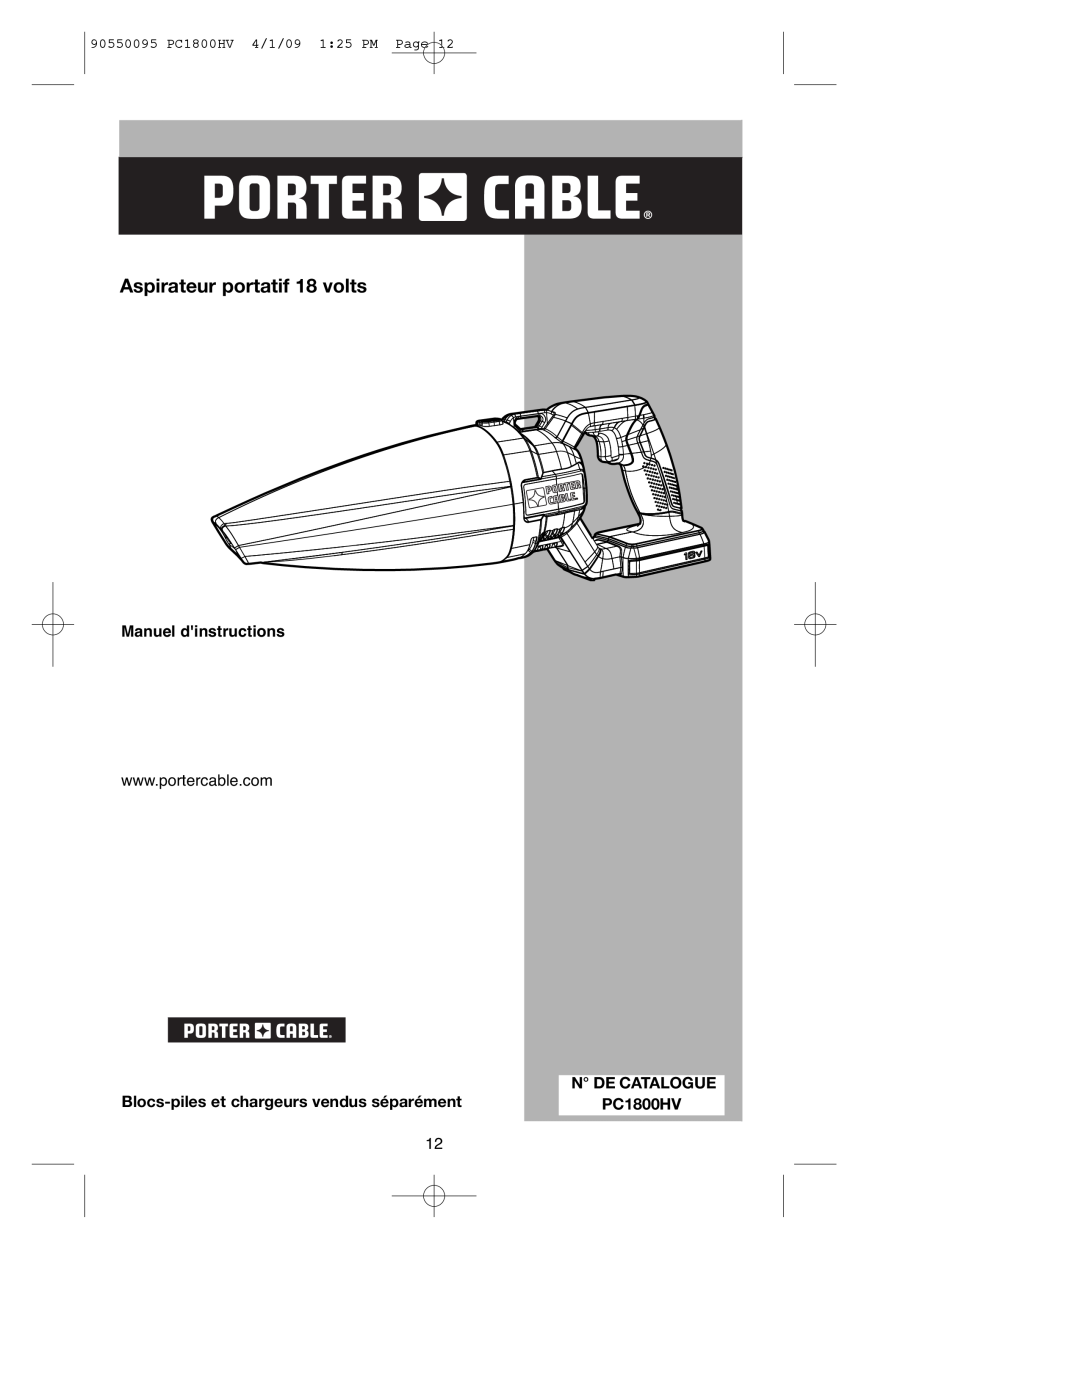 Porter-Cable 90550095 Aspirateur portatif 18 volts, Manuel dinstructions, Blocs-pileset chargeurs vendus séparément 